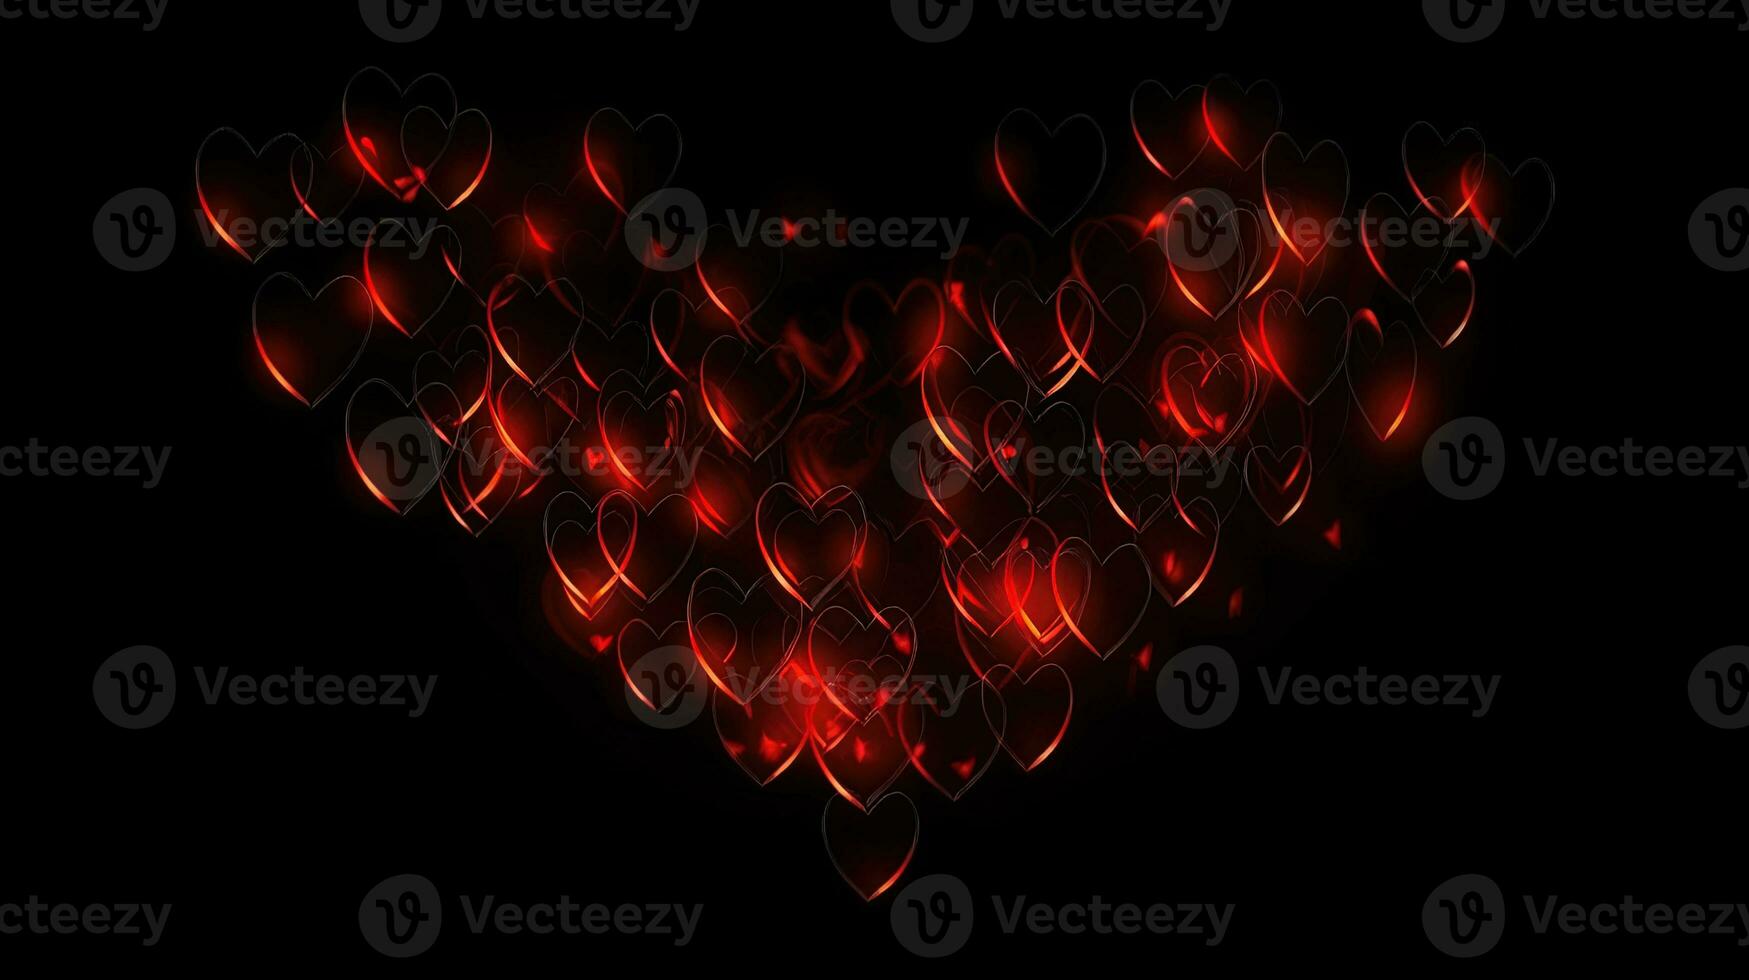 romántico san valentin día corazón en negro antecedentes con amor ligero y fuego animación foto